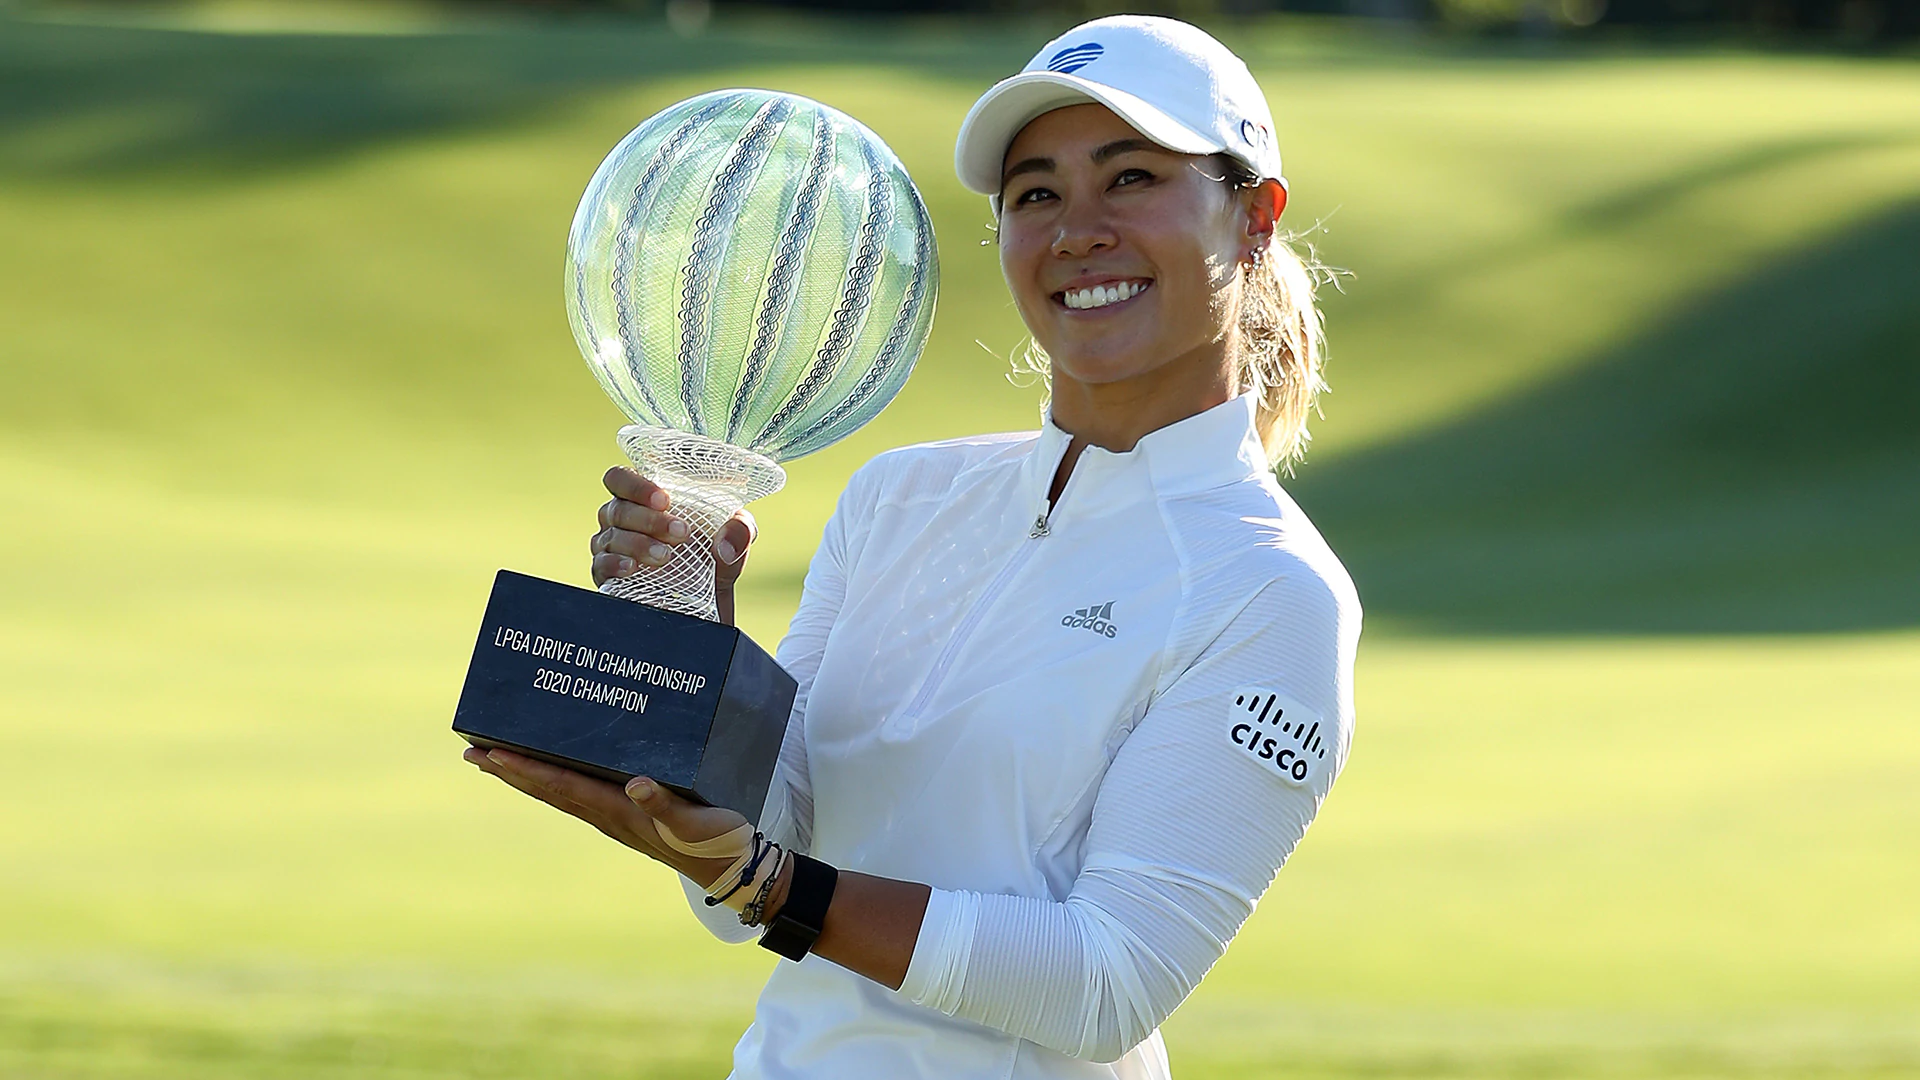 Danielle Kang wins at Inverness at LPGA’s return to golf